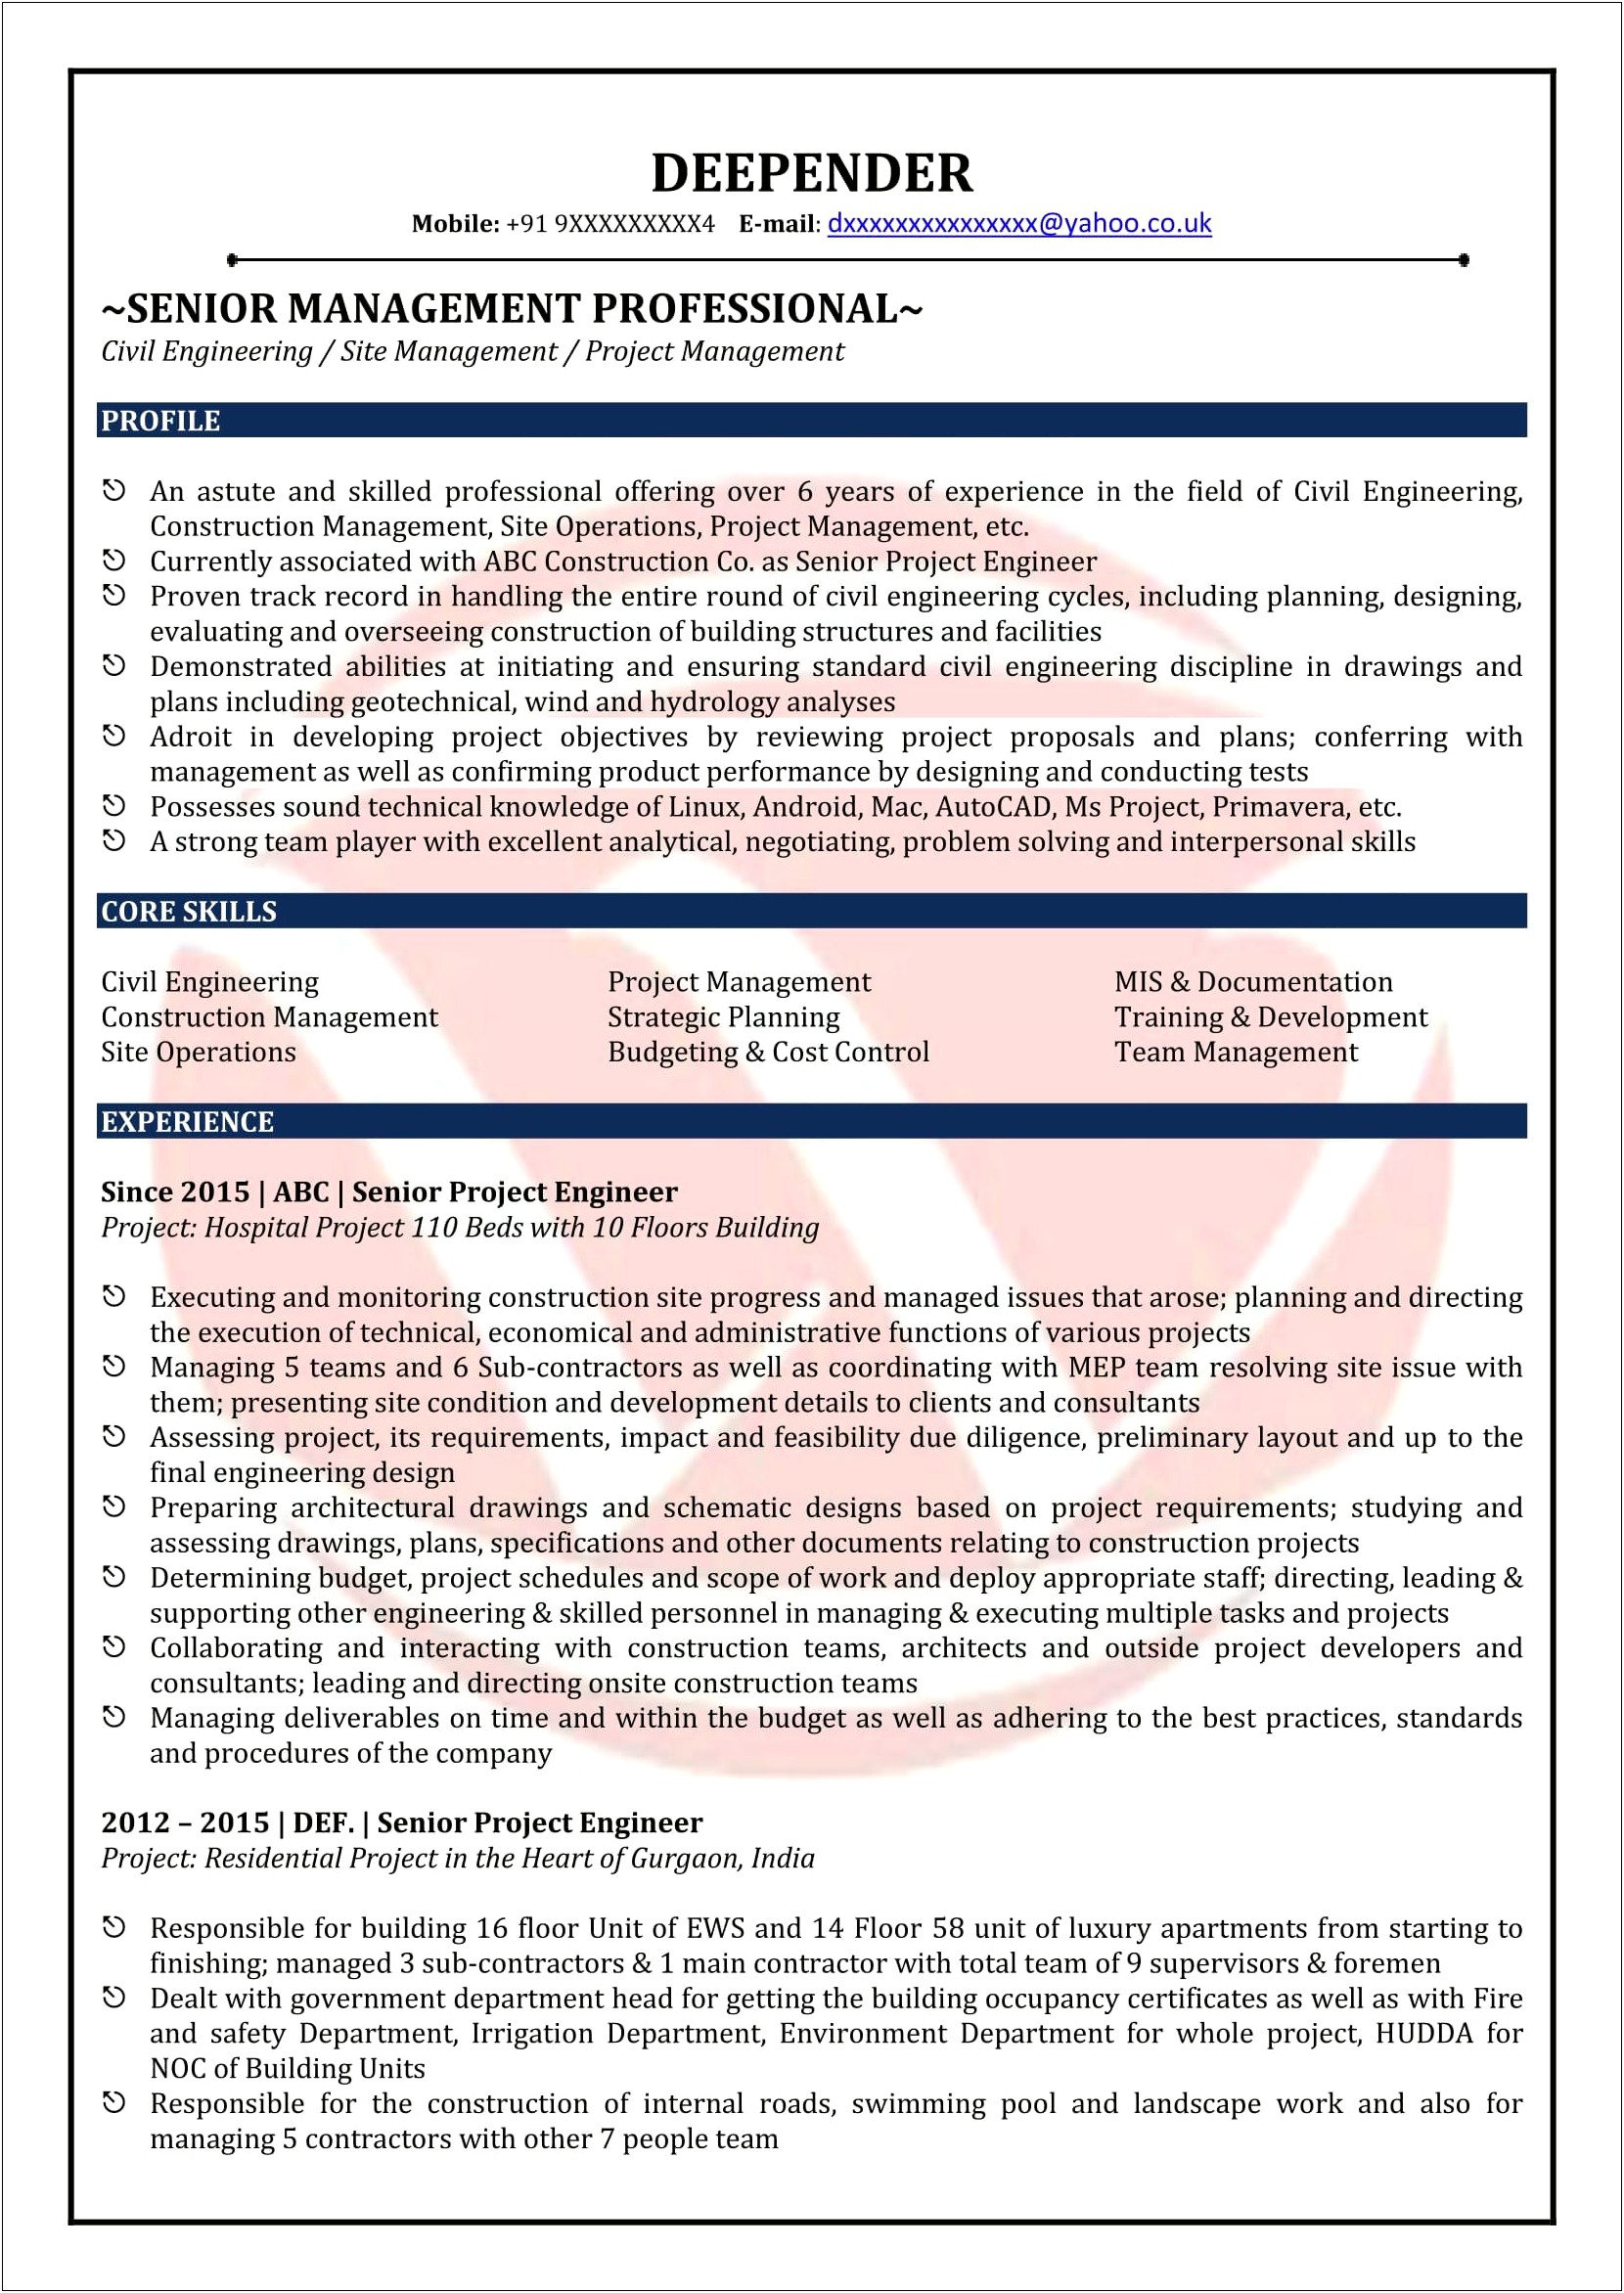 Sample Resume For Civil Engineer Fresher Pdf